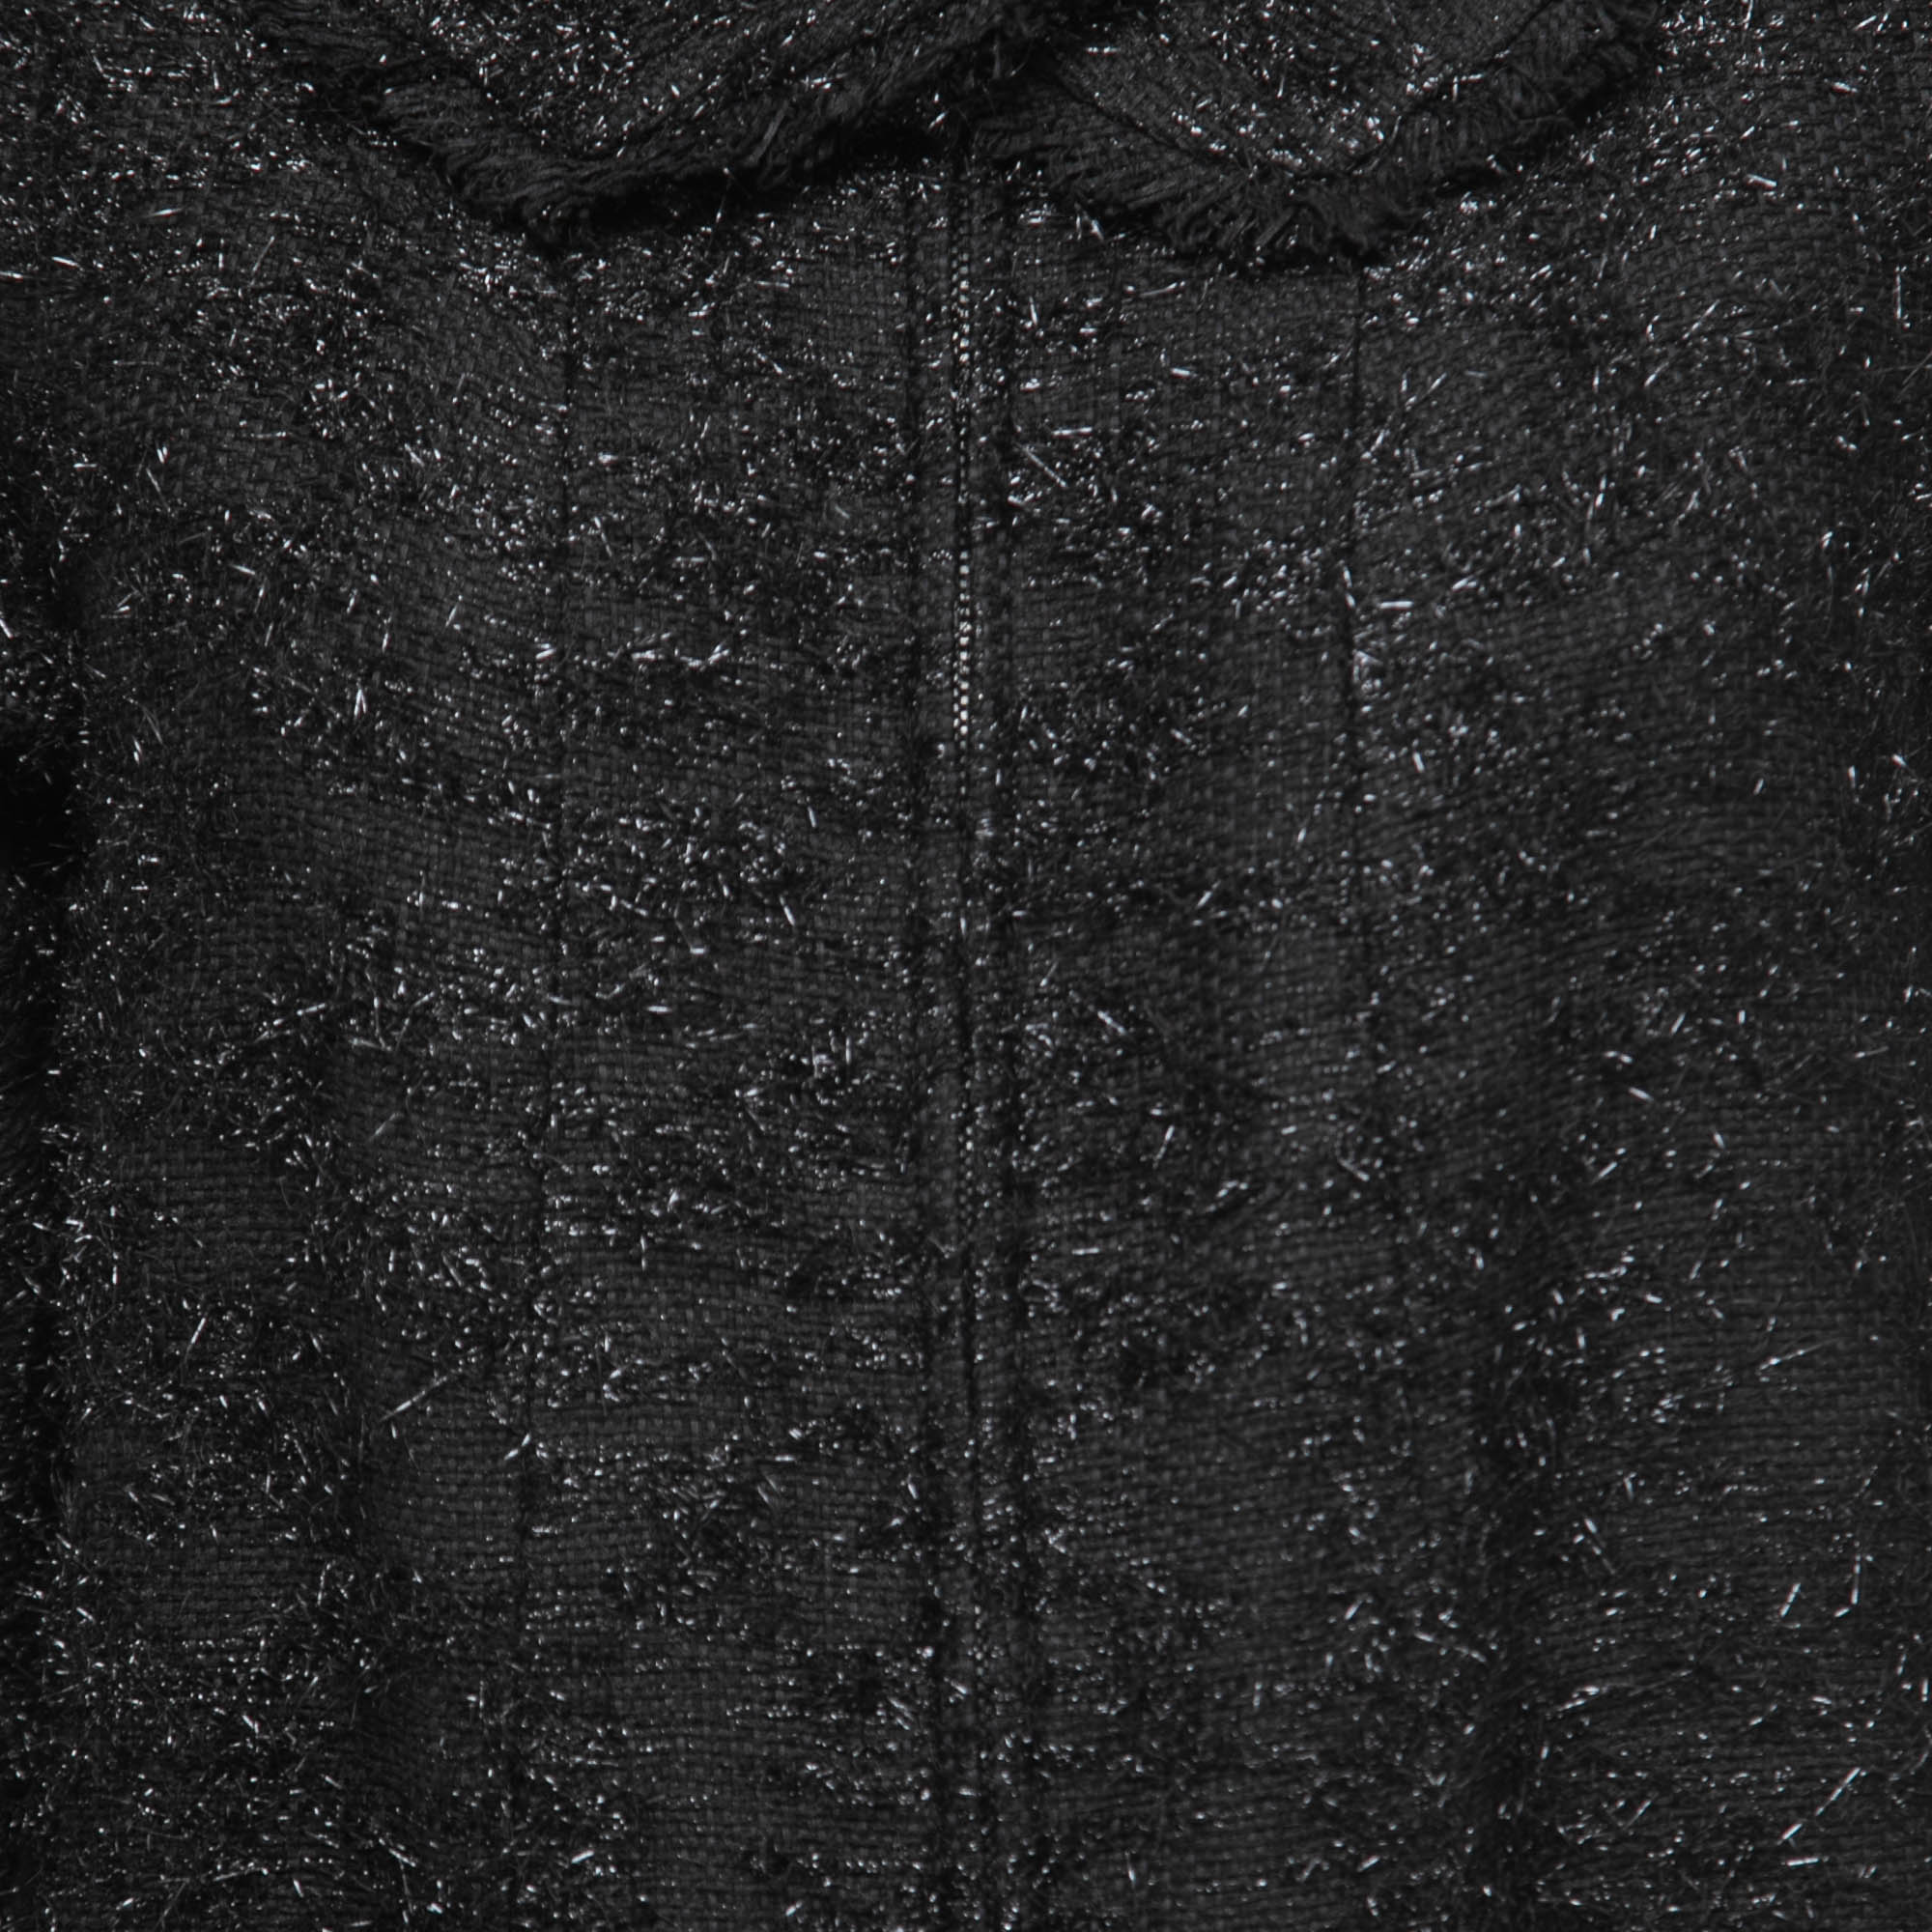 Chanel Black Tweed Zip Front Coat S